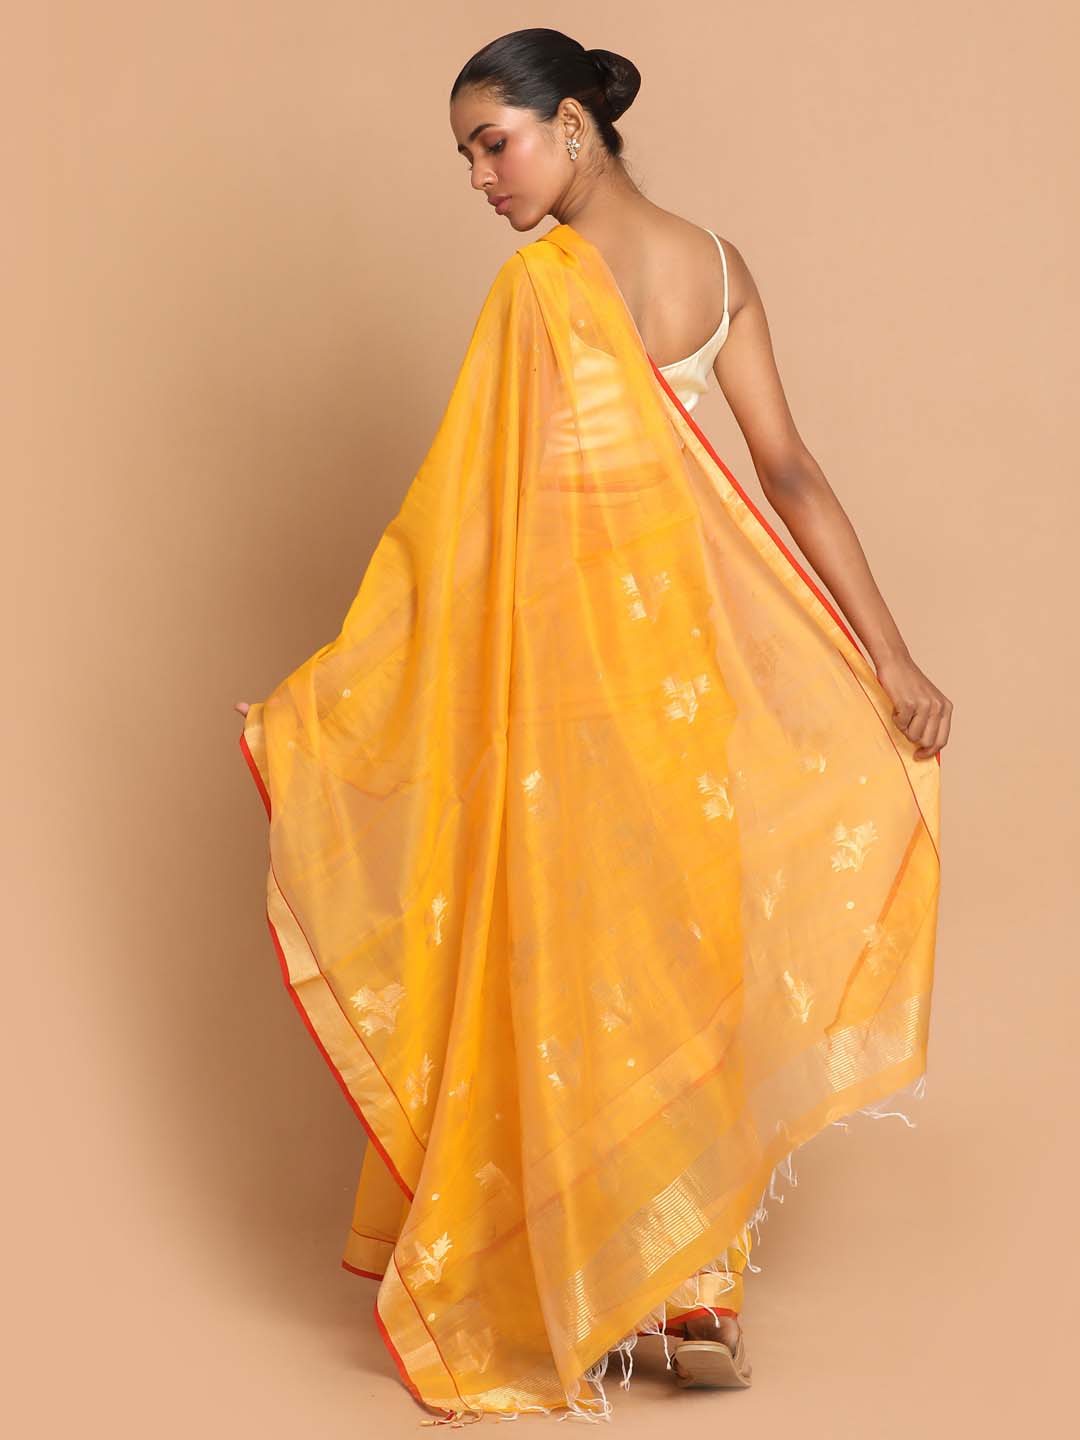 Indethnic Chanderi Handloom Silk Cotton Saree - View 3